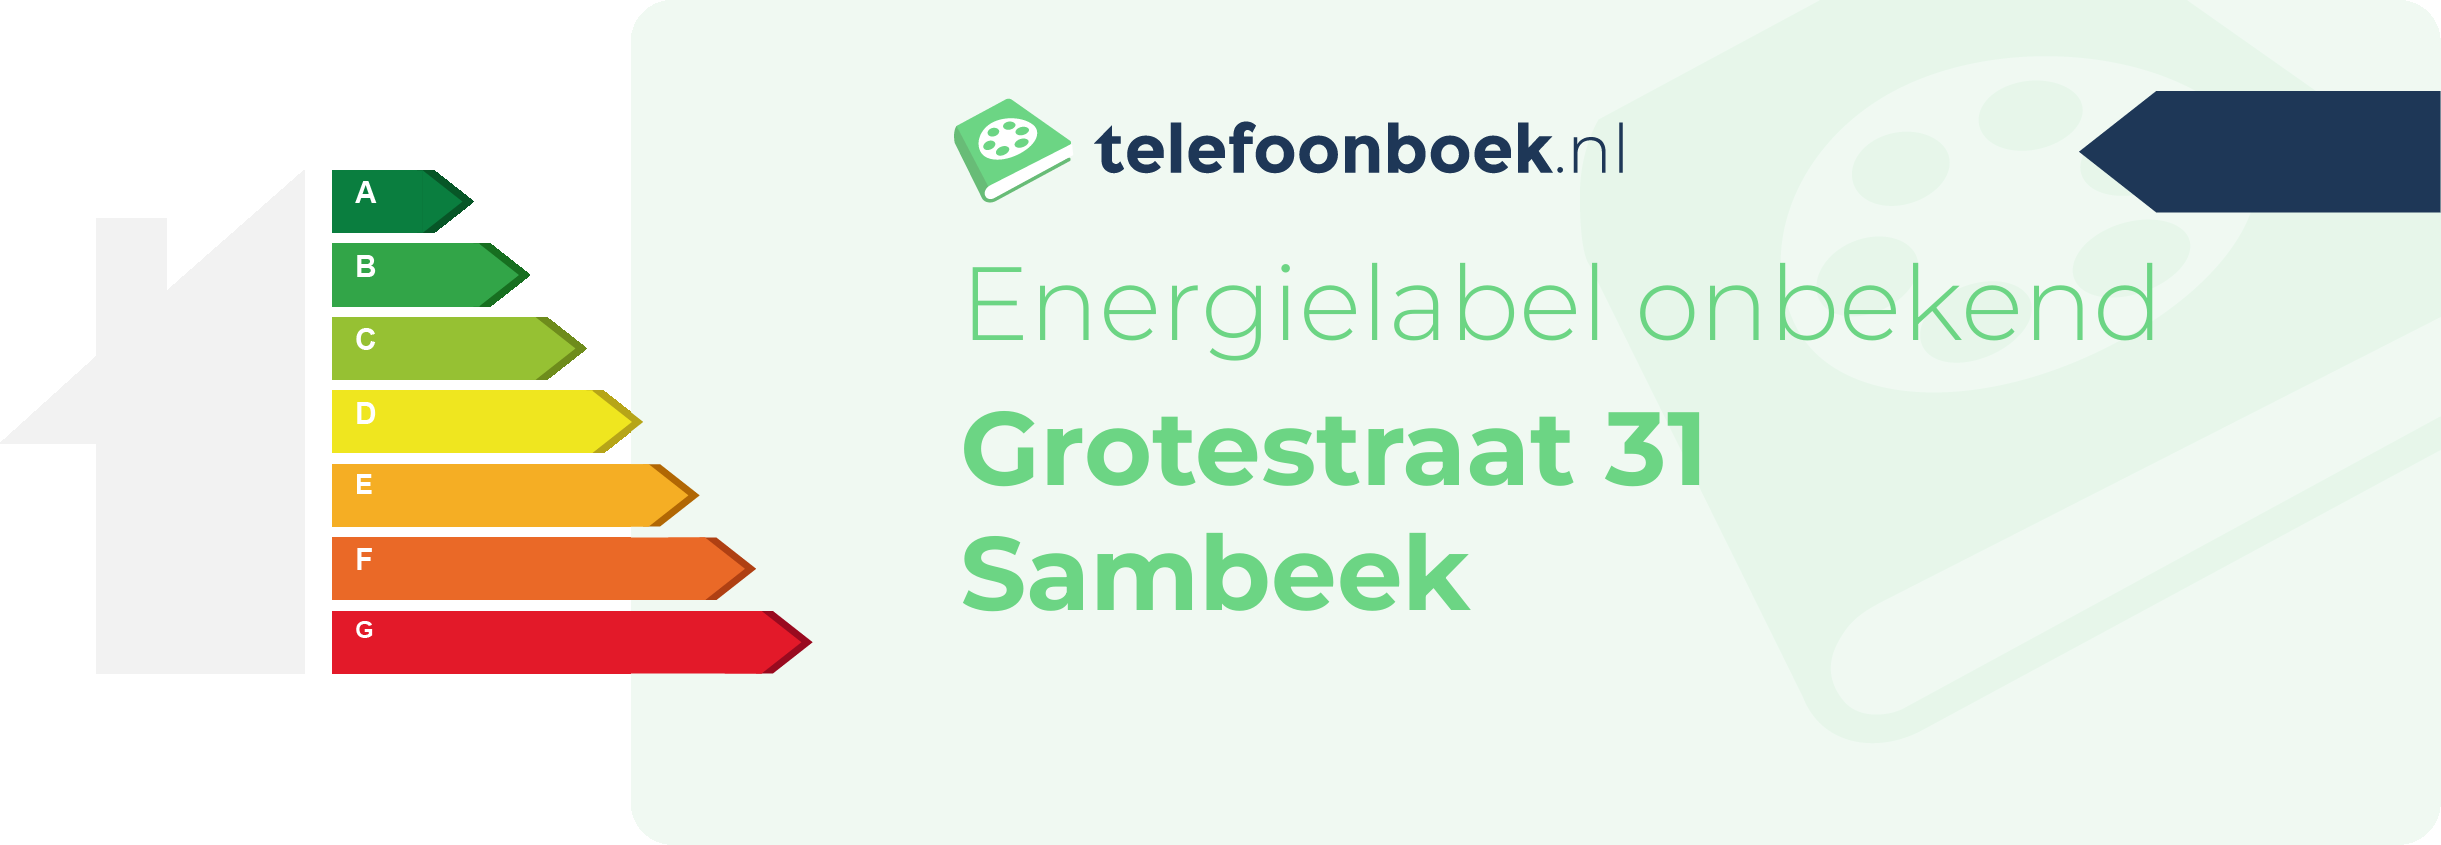 Energielabel Grotestraat 31 Sambeek